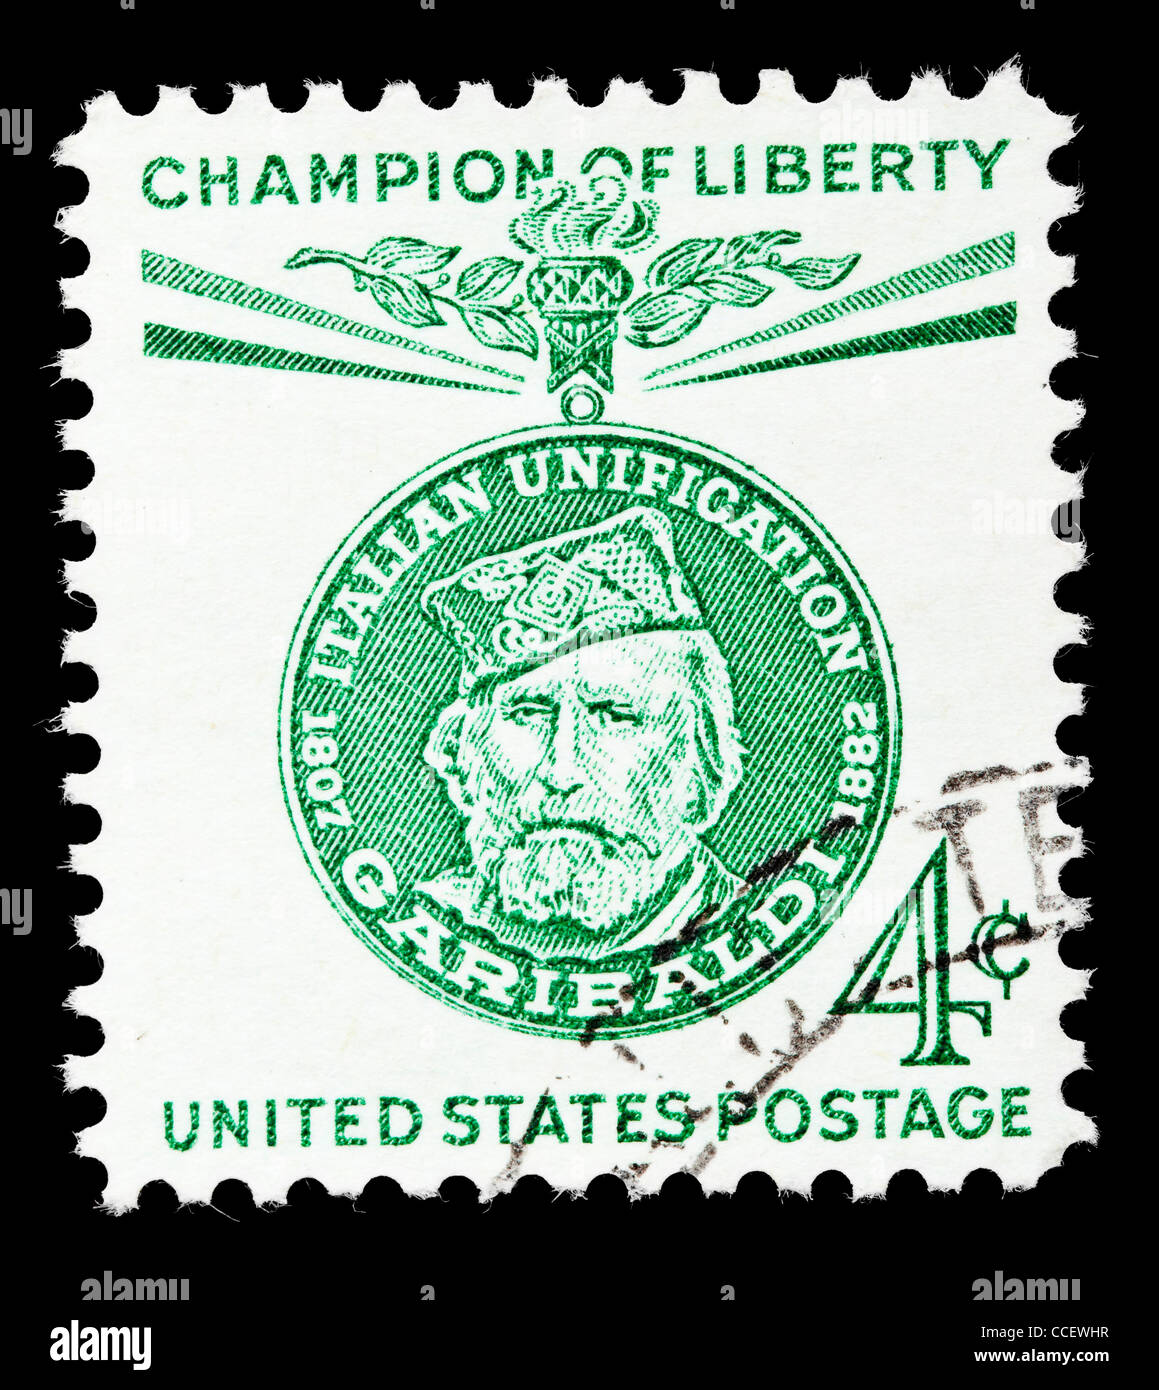 Sello: Estados Unidos franqueo, campeón de la libertad Giuseppe Garibaldi, el 4% de 1960, estampado Foto de stock